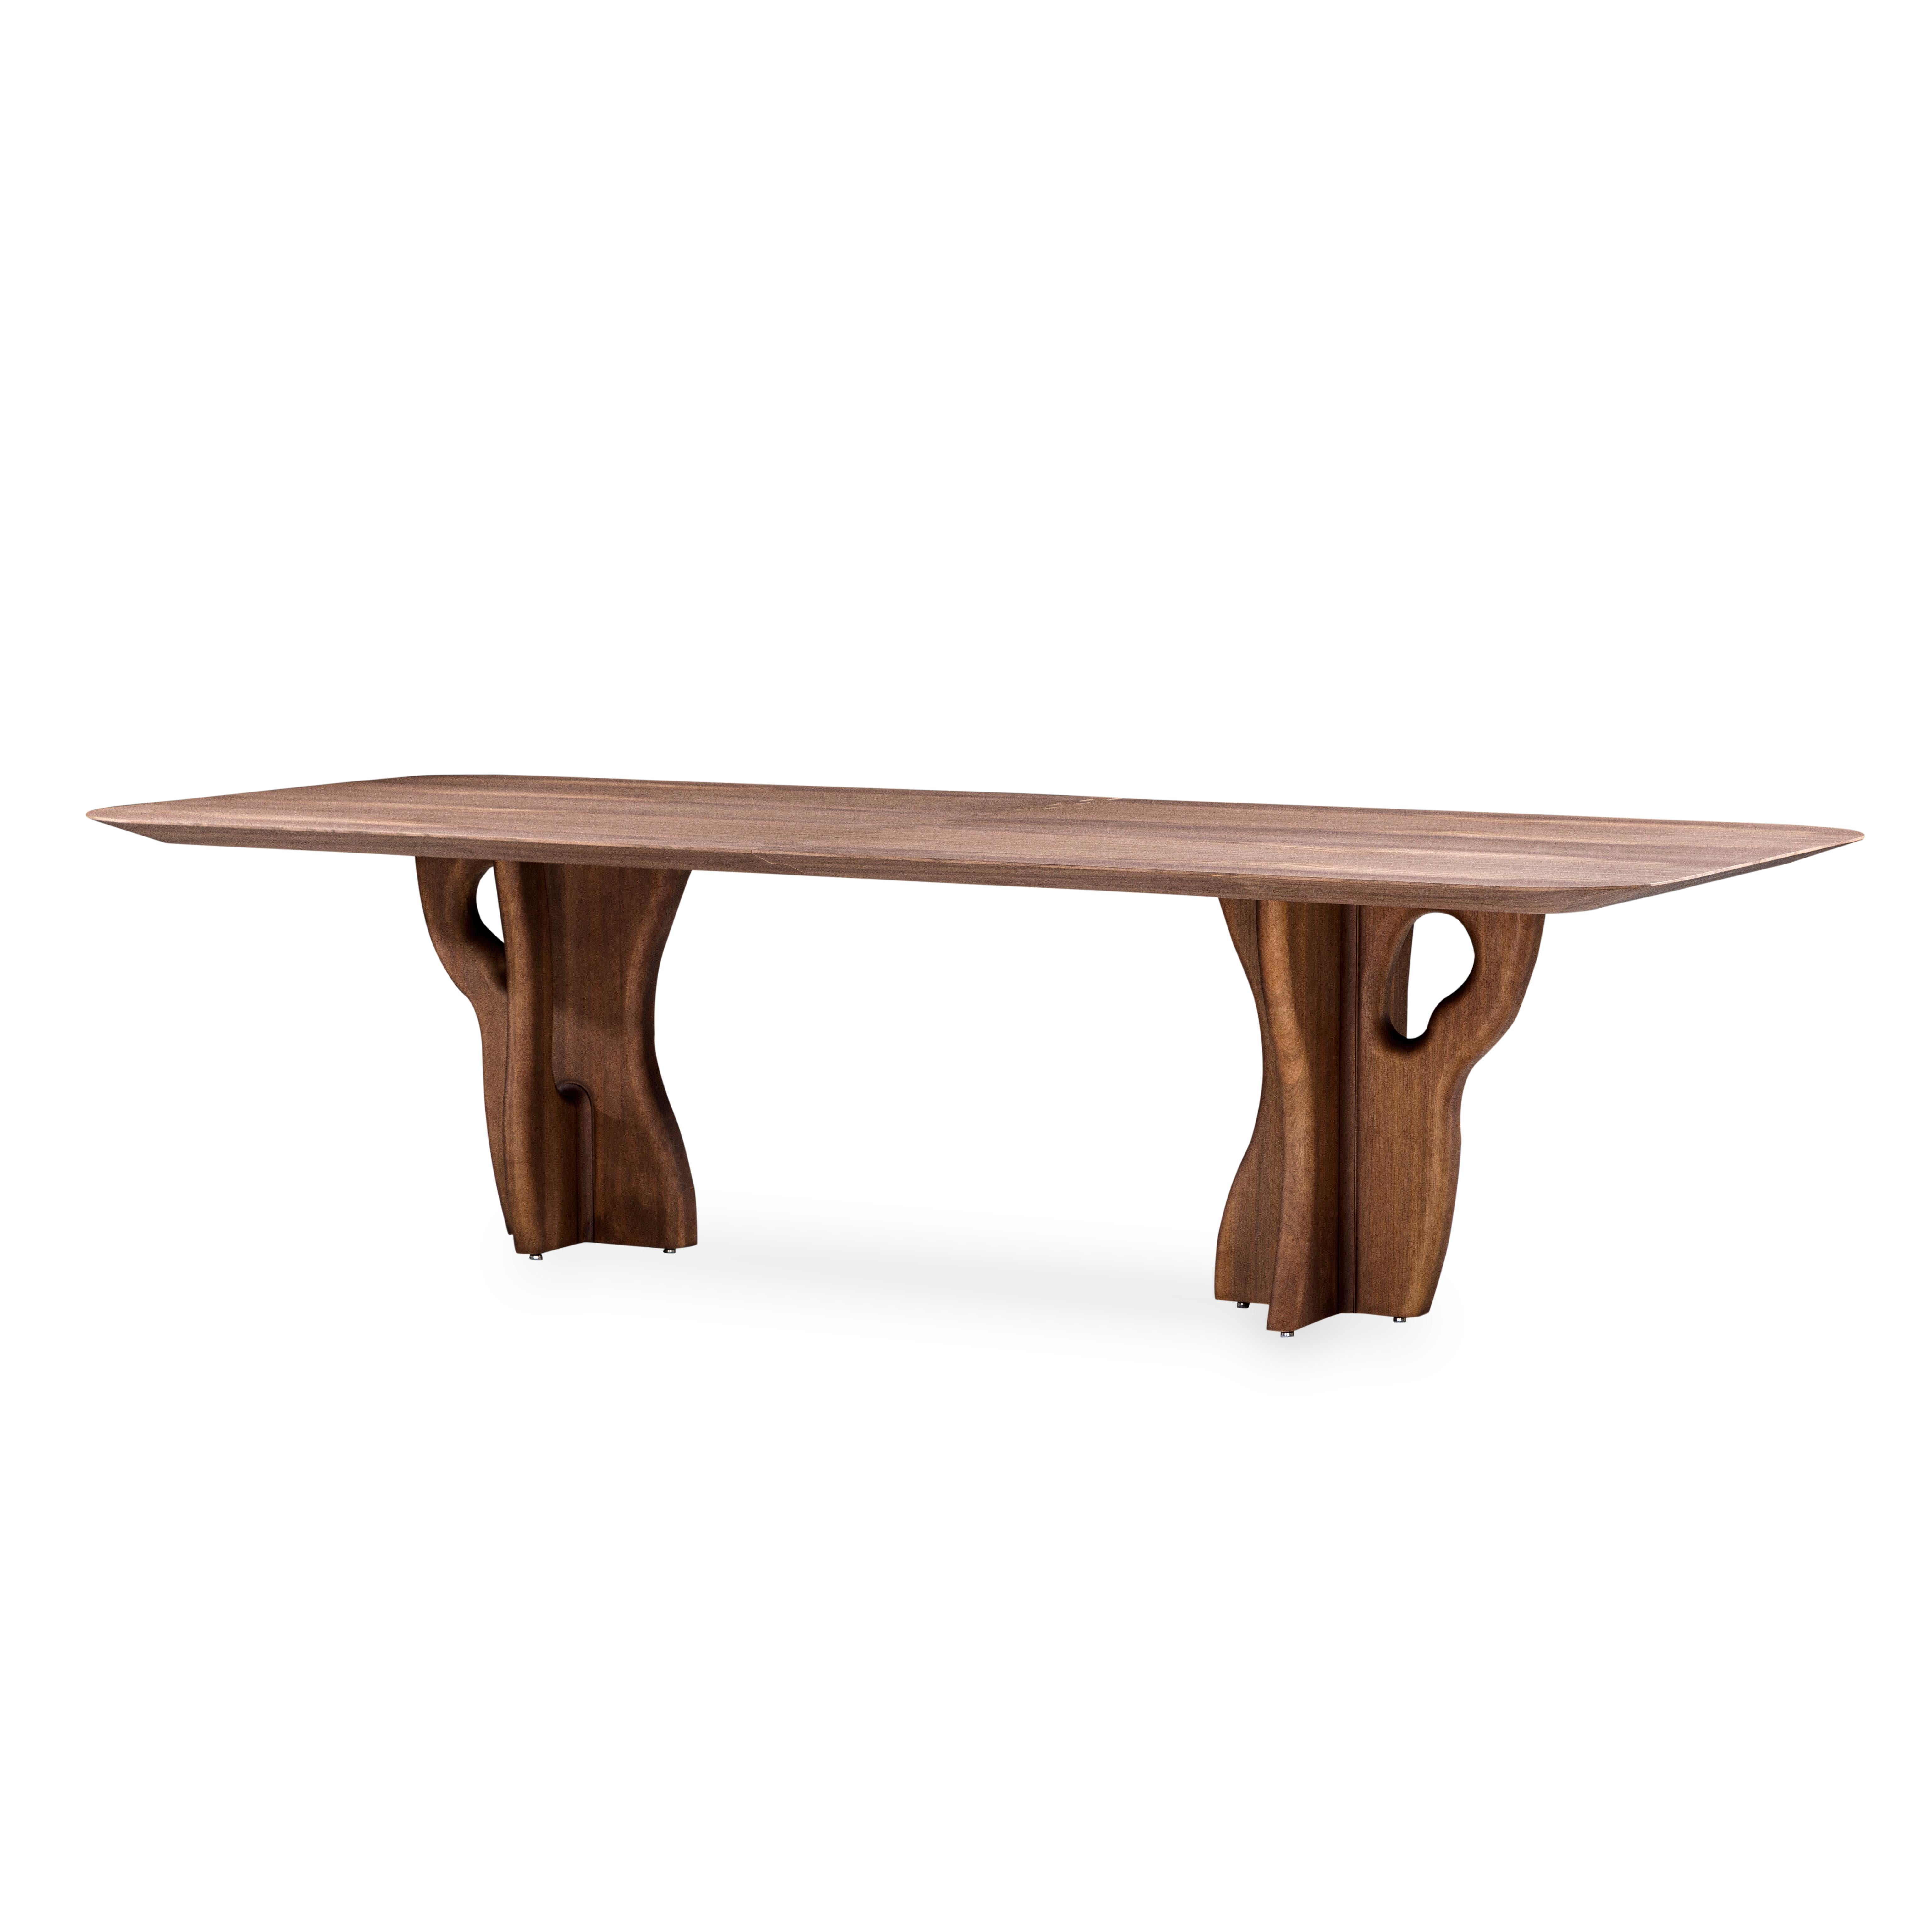 L'équipe de design d'Uultis a fabriqué la table de salle à manger Suma avec un plateau en finition plaquée noyer et des pieds en bois massif organique, parfaits pour votre espace de salle à manger rêvé. Il s'agit d'une pièce conçue pour être